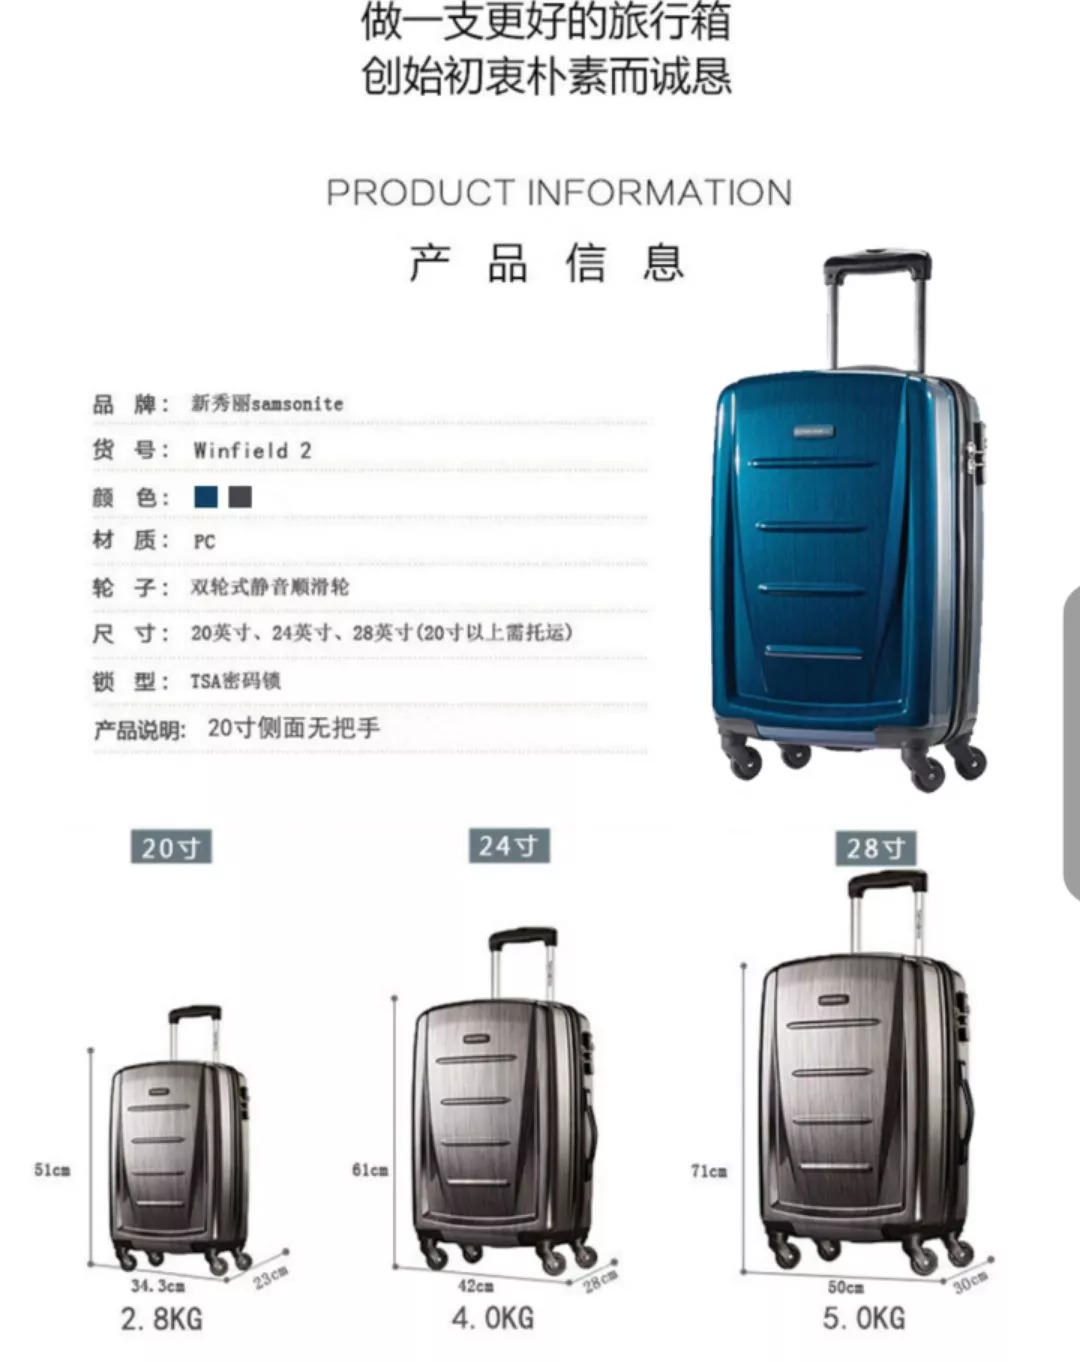 行李箱的尺寸有三种:20寸,24寸和28寸.